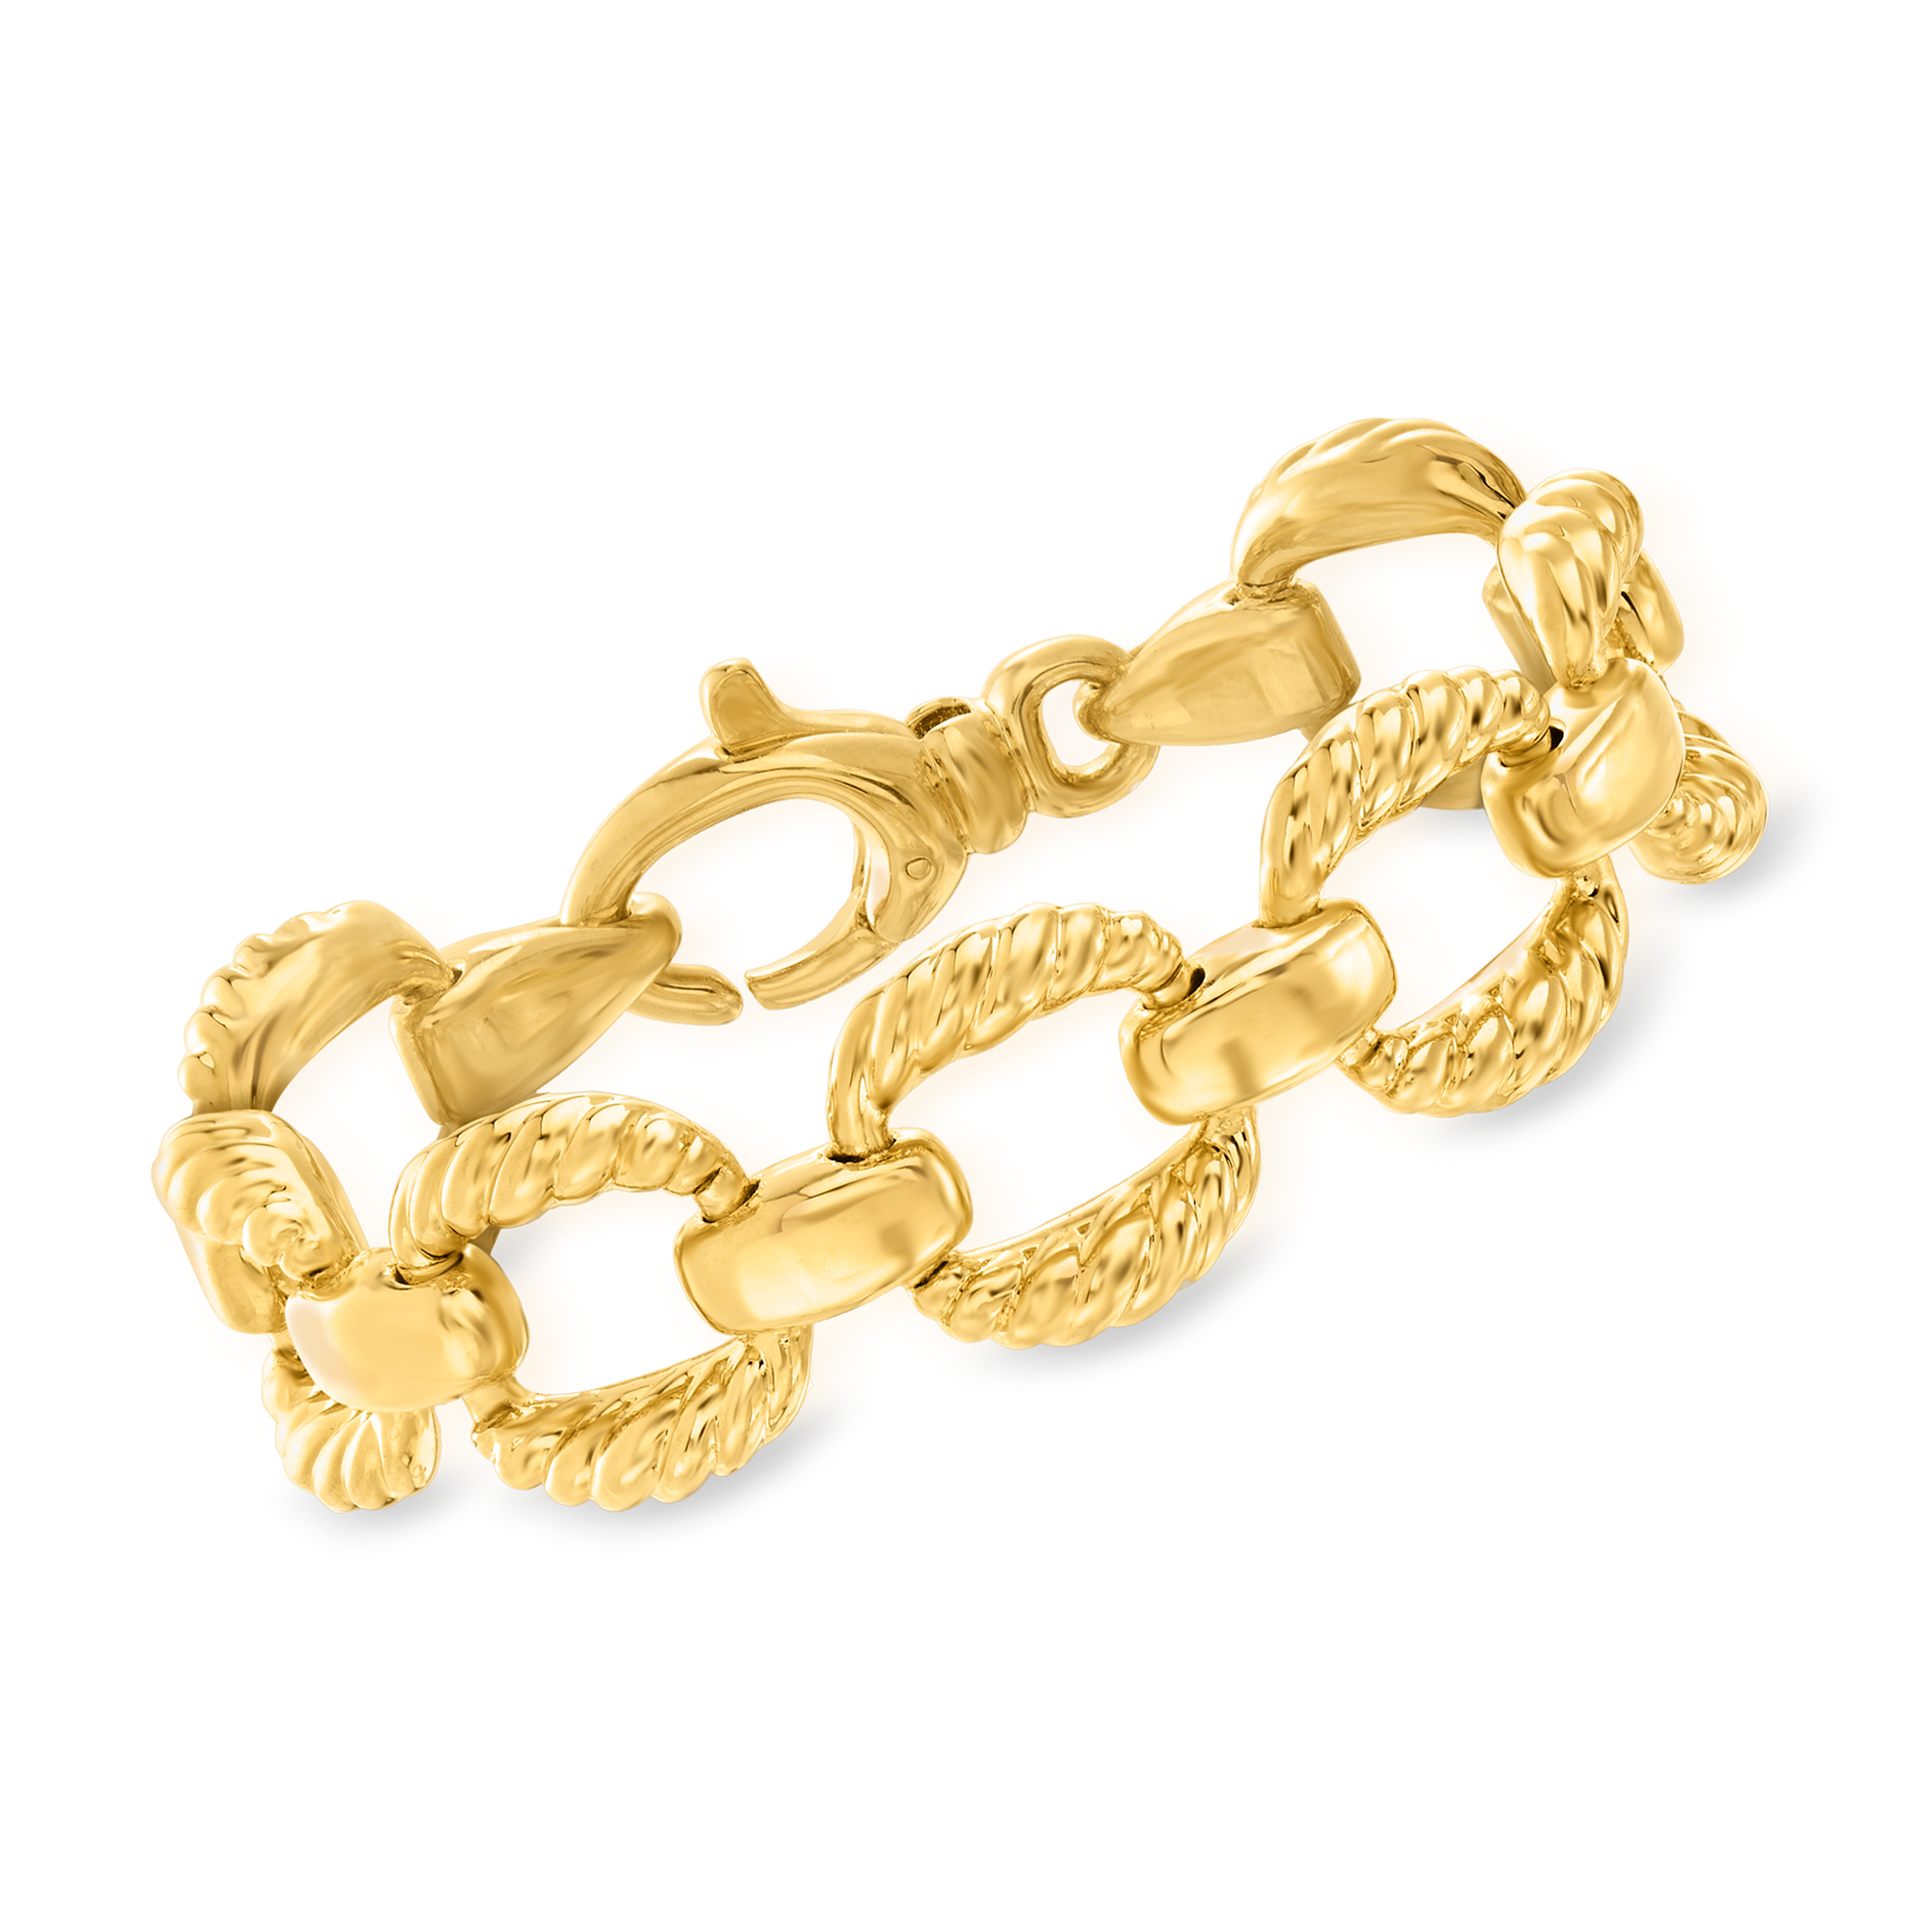 Italian Andiamo 14kt Yellow Gold Over Resin Square-Link Bracelet |  Ross-Simons